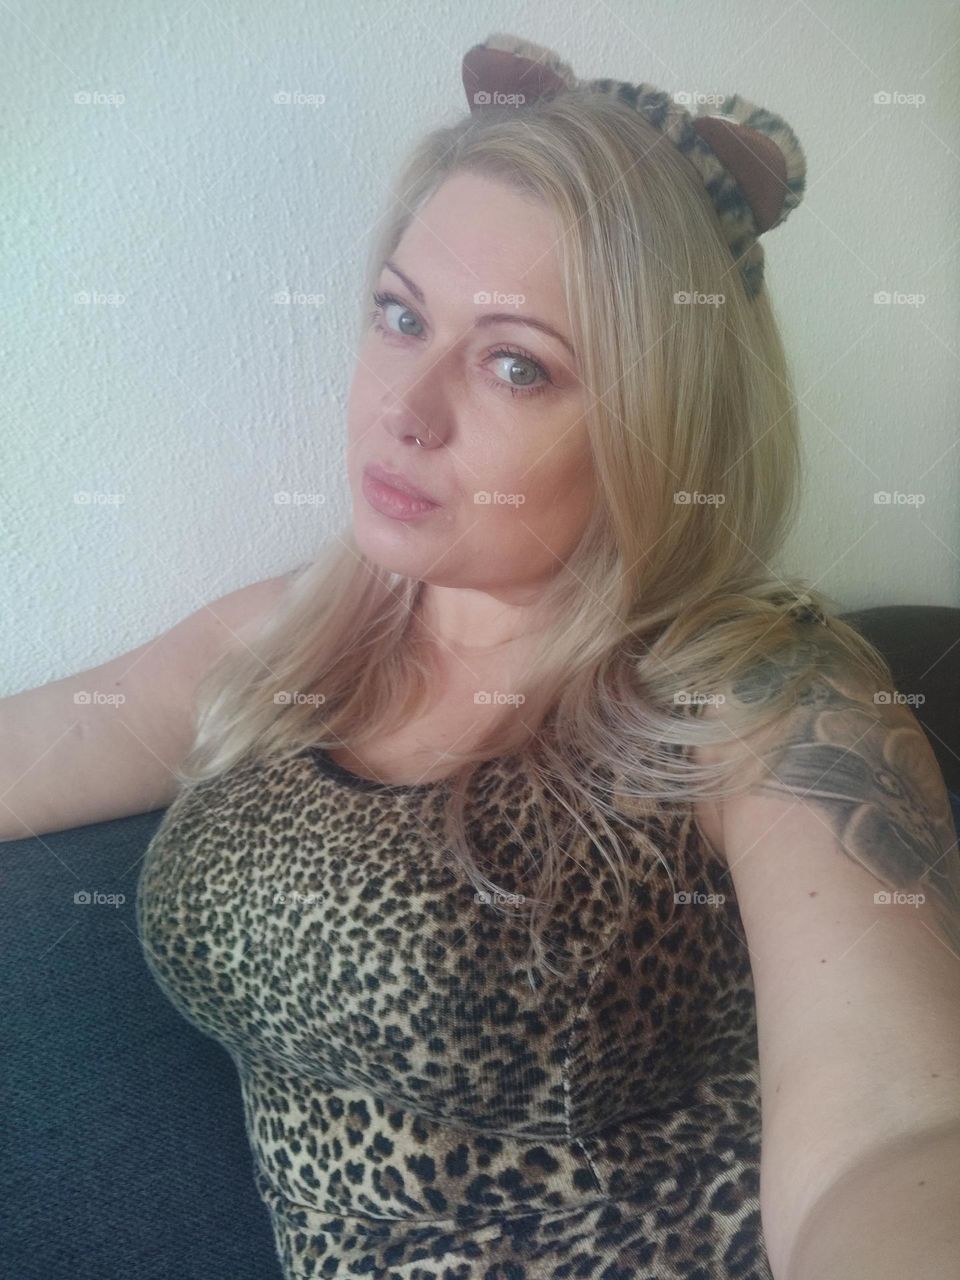 Blonde woman in leopard print dress